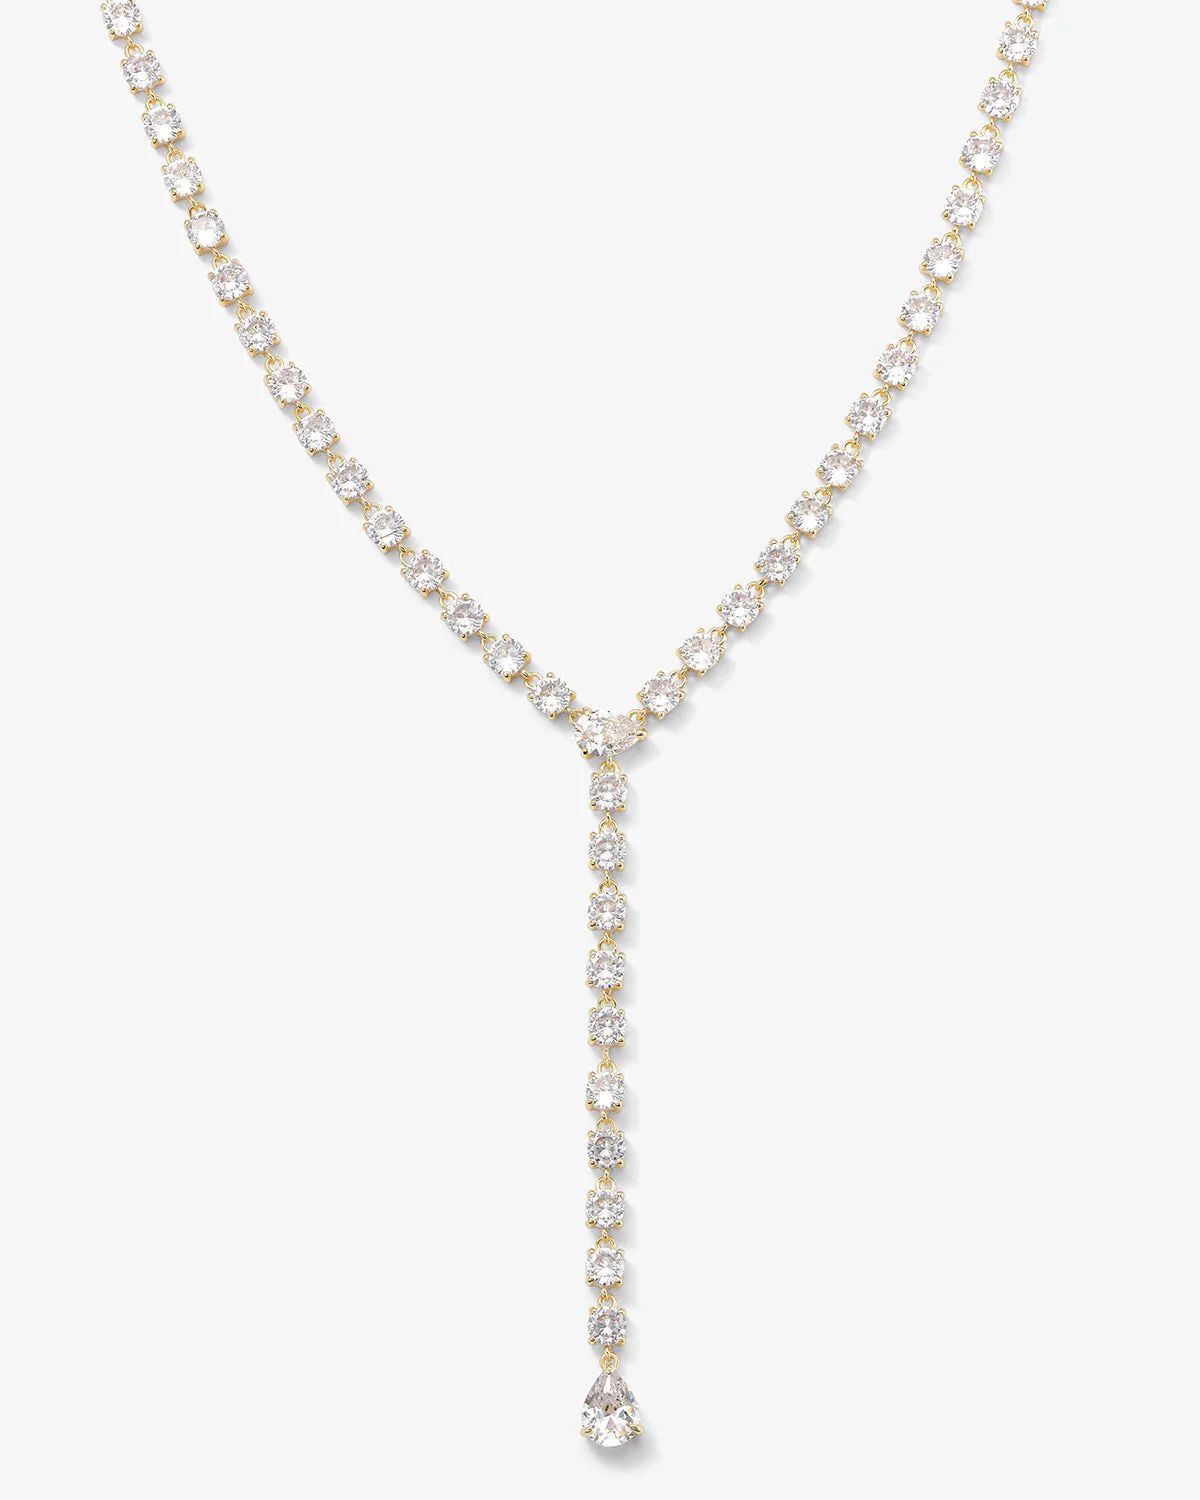 Diamond Drop Necklace - Gold|White Diamondettes | Melinda Maria